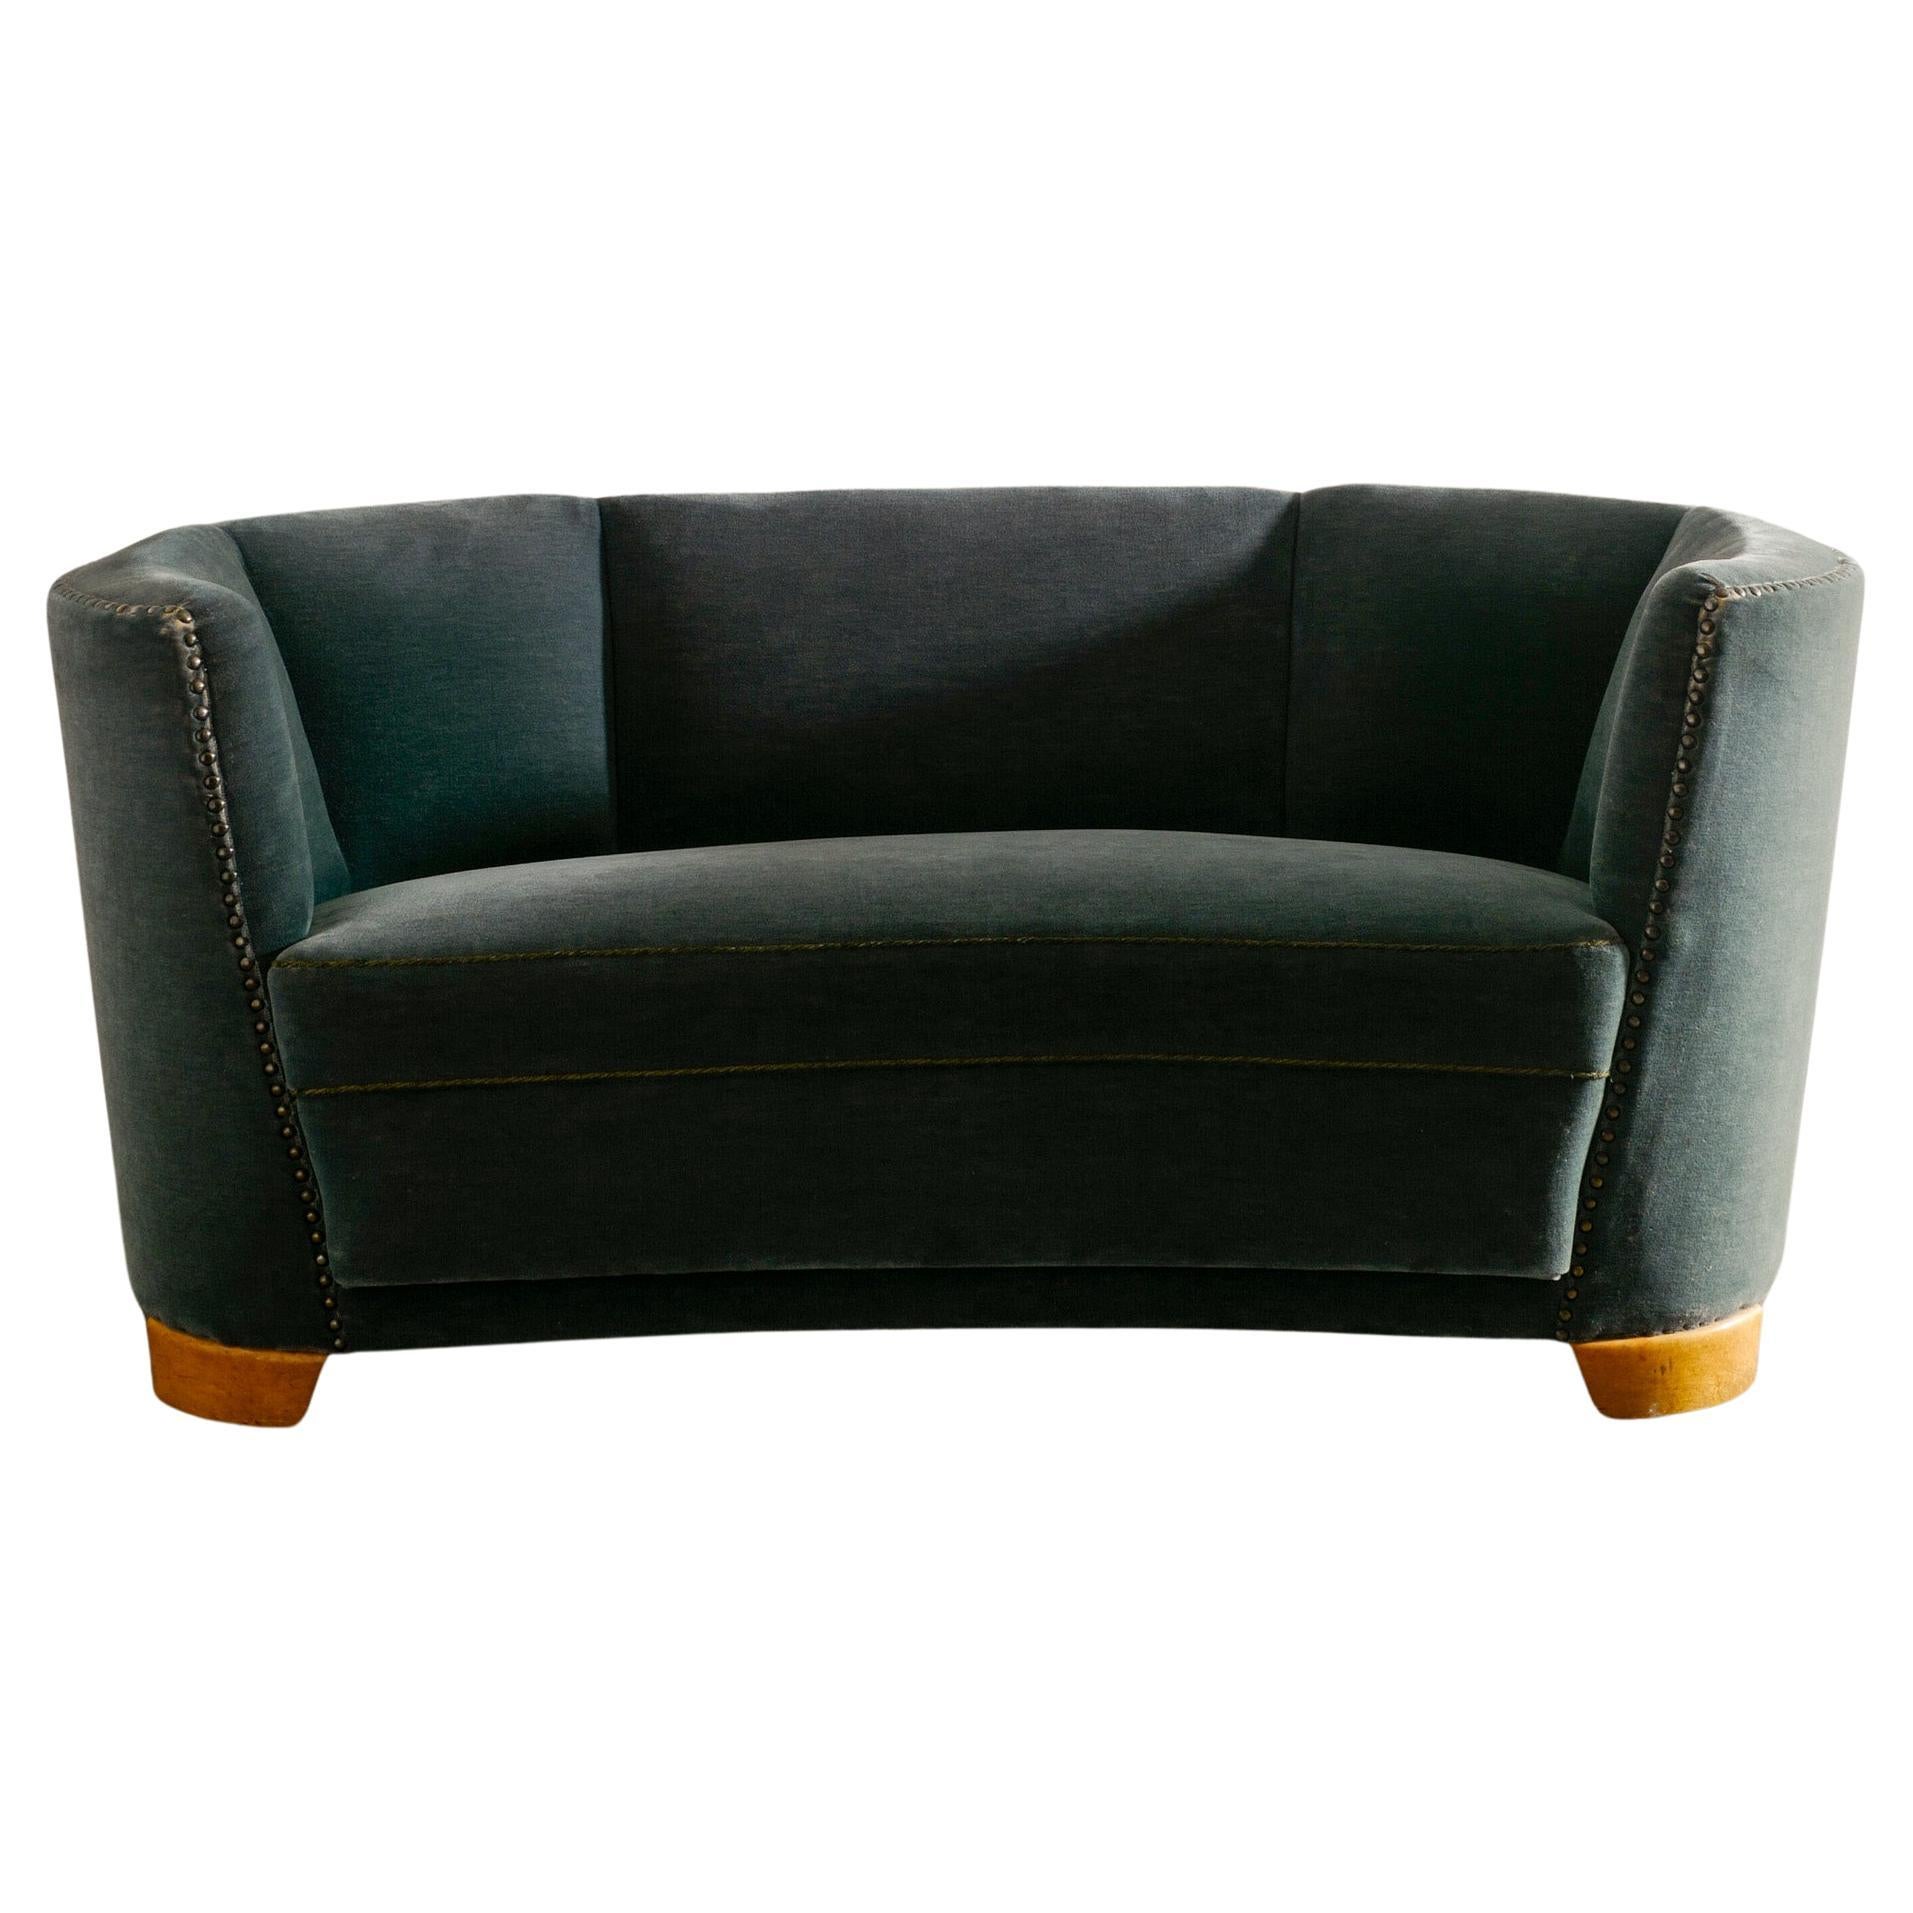 Swedish Mid Century Modern Curved Sofa in Dark Green Velvet Upholstery, 1930s  For Sale